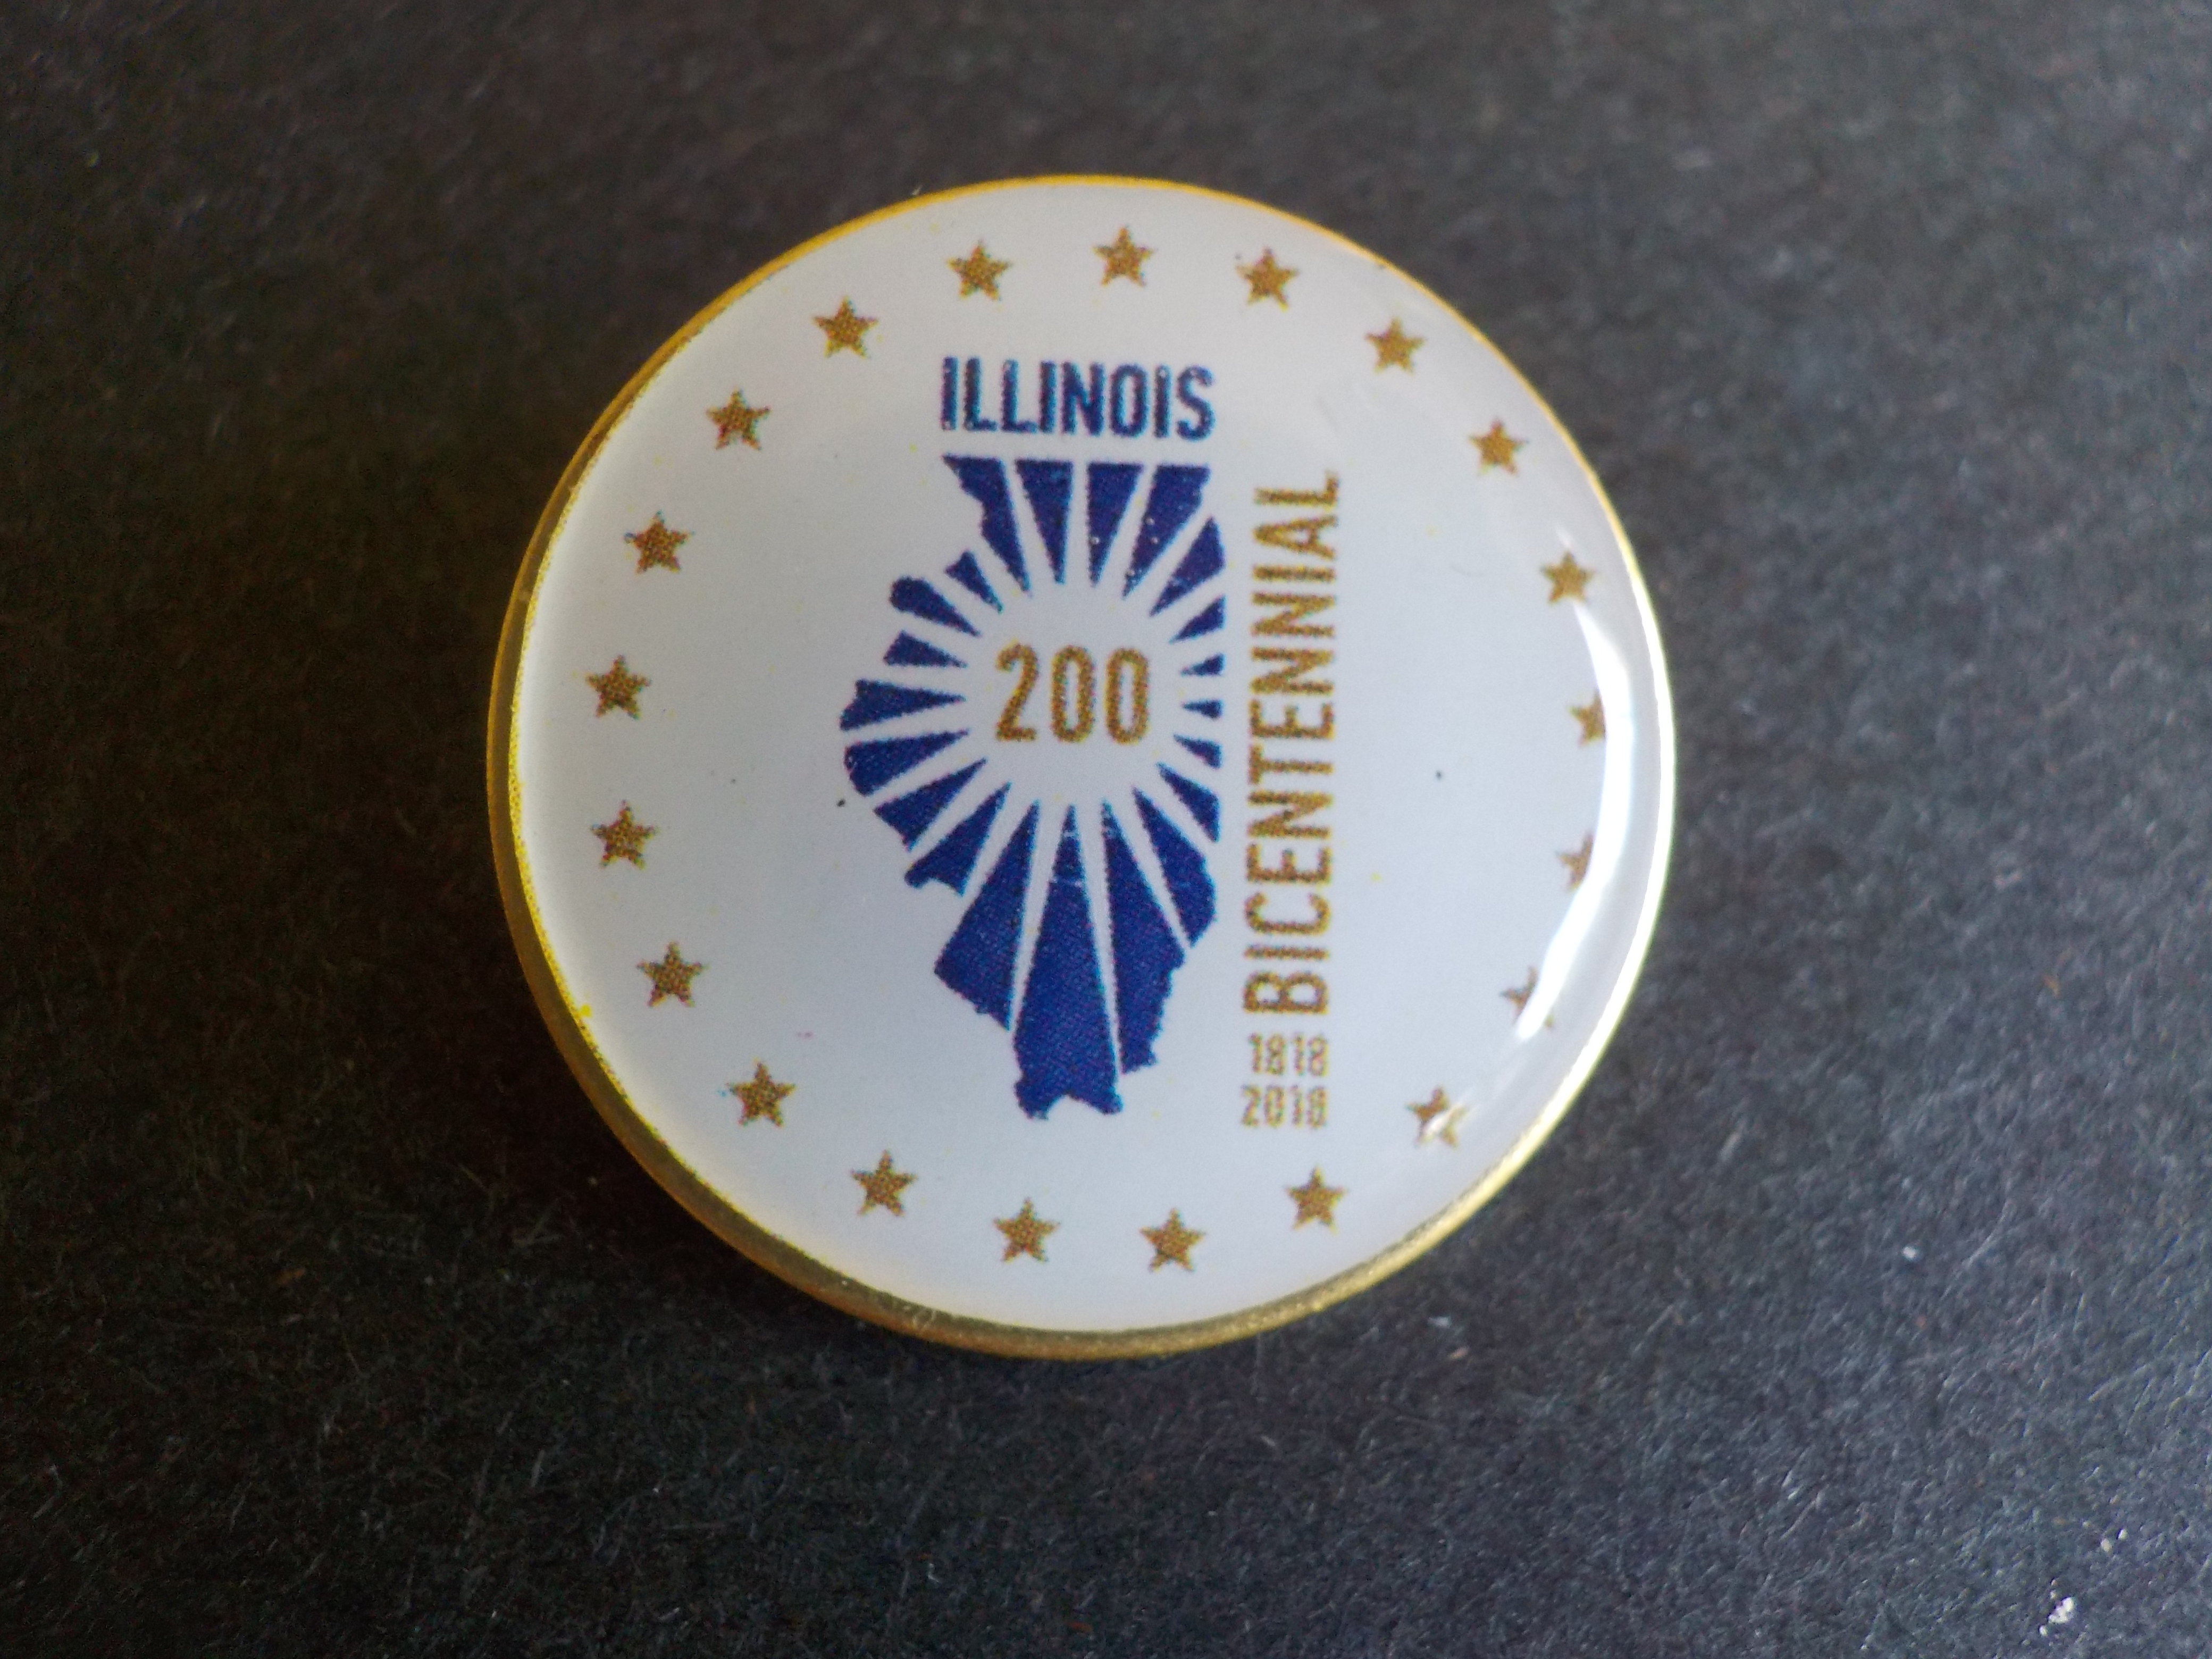 Official Bicentennial pin